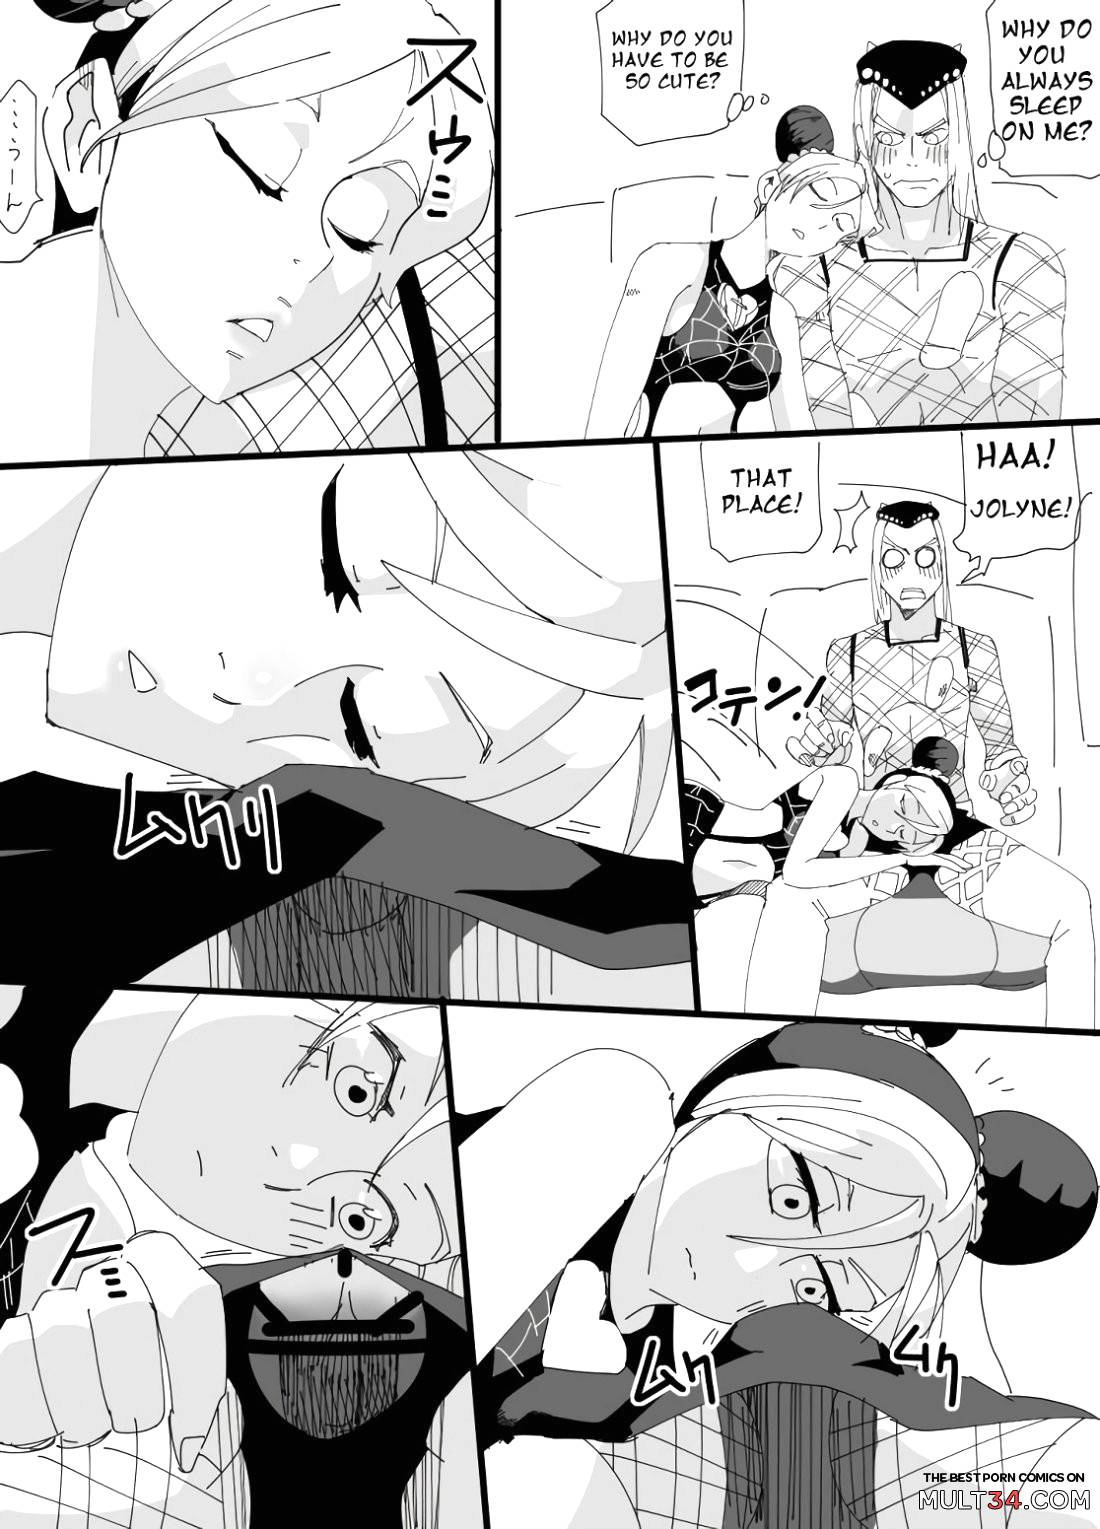 Rakugaki ~Jolyne~ (JoJo's Bizarre Adventure) page 10